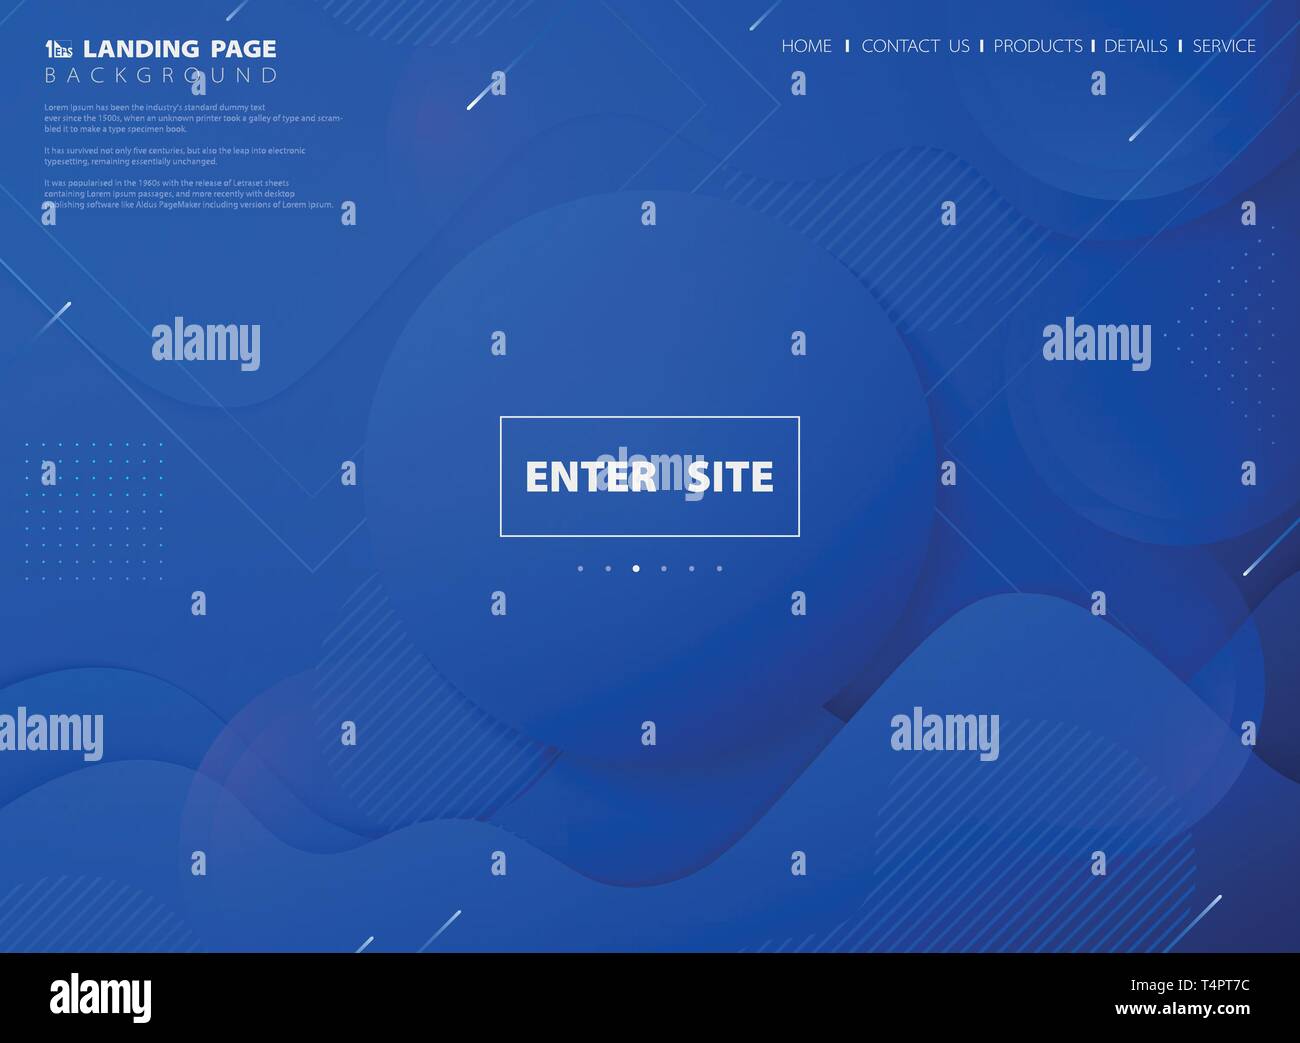 Moderne abstrakt blau leuchtenden Farben Technologie web landing page Hintergrund. Sie können für die Webseite, Website, Plakat, Print, Grafik, Design. Stock Vektor